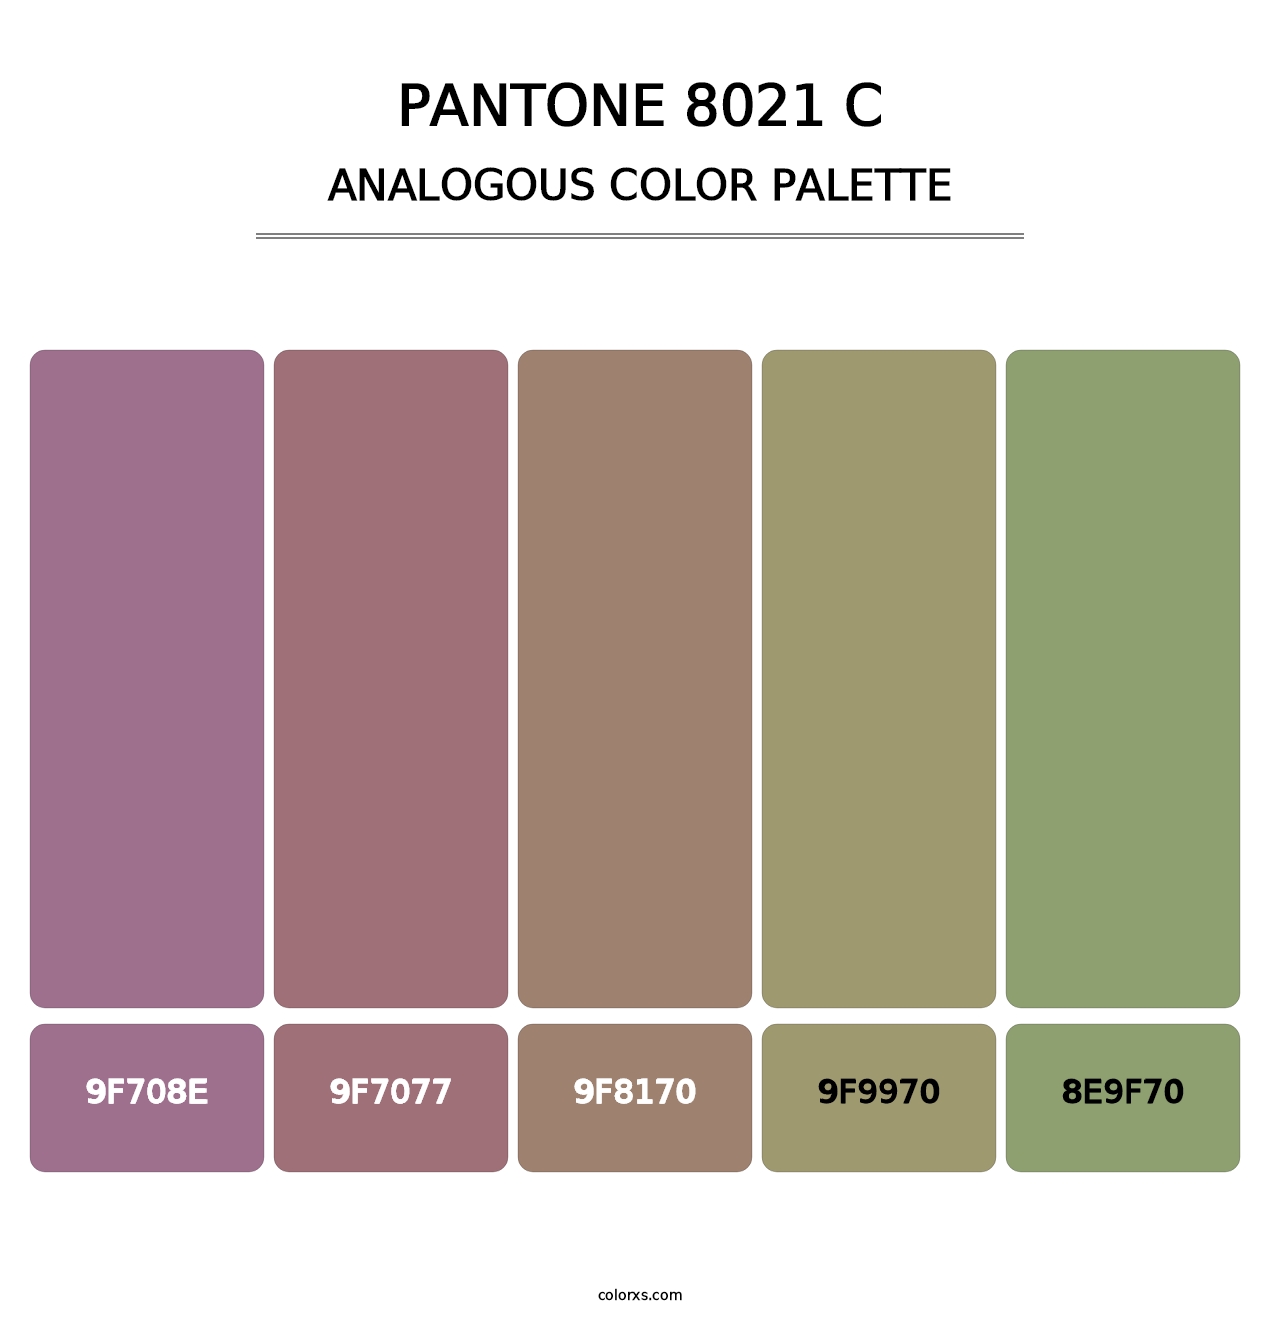 PANTONE 8021 C - Analogous Color Palette